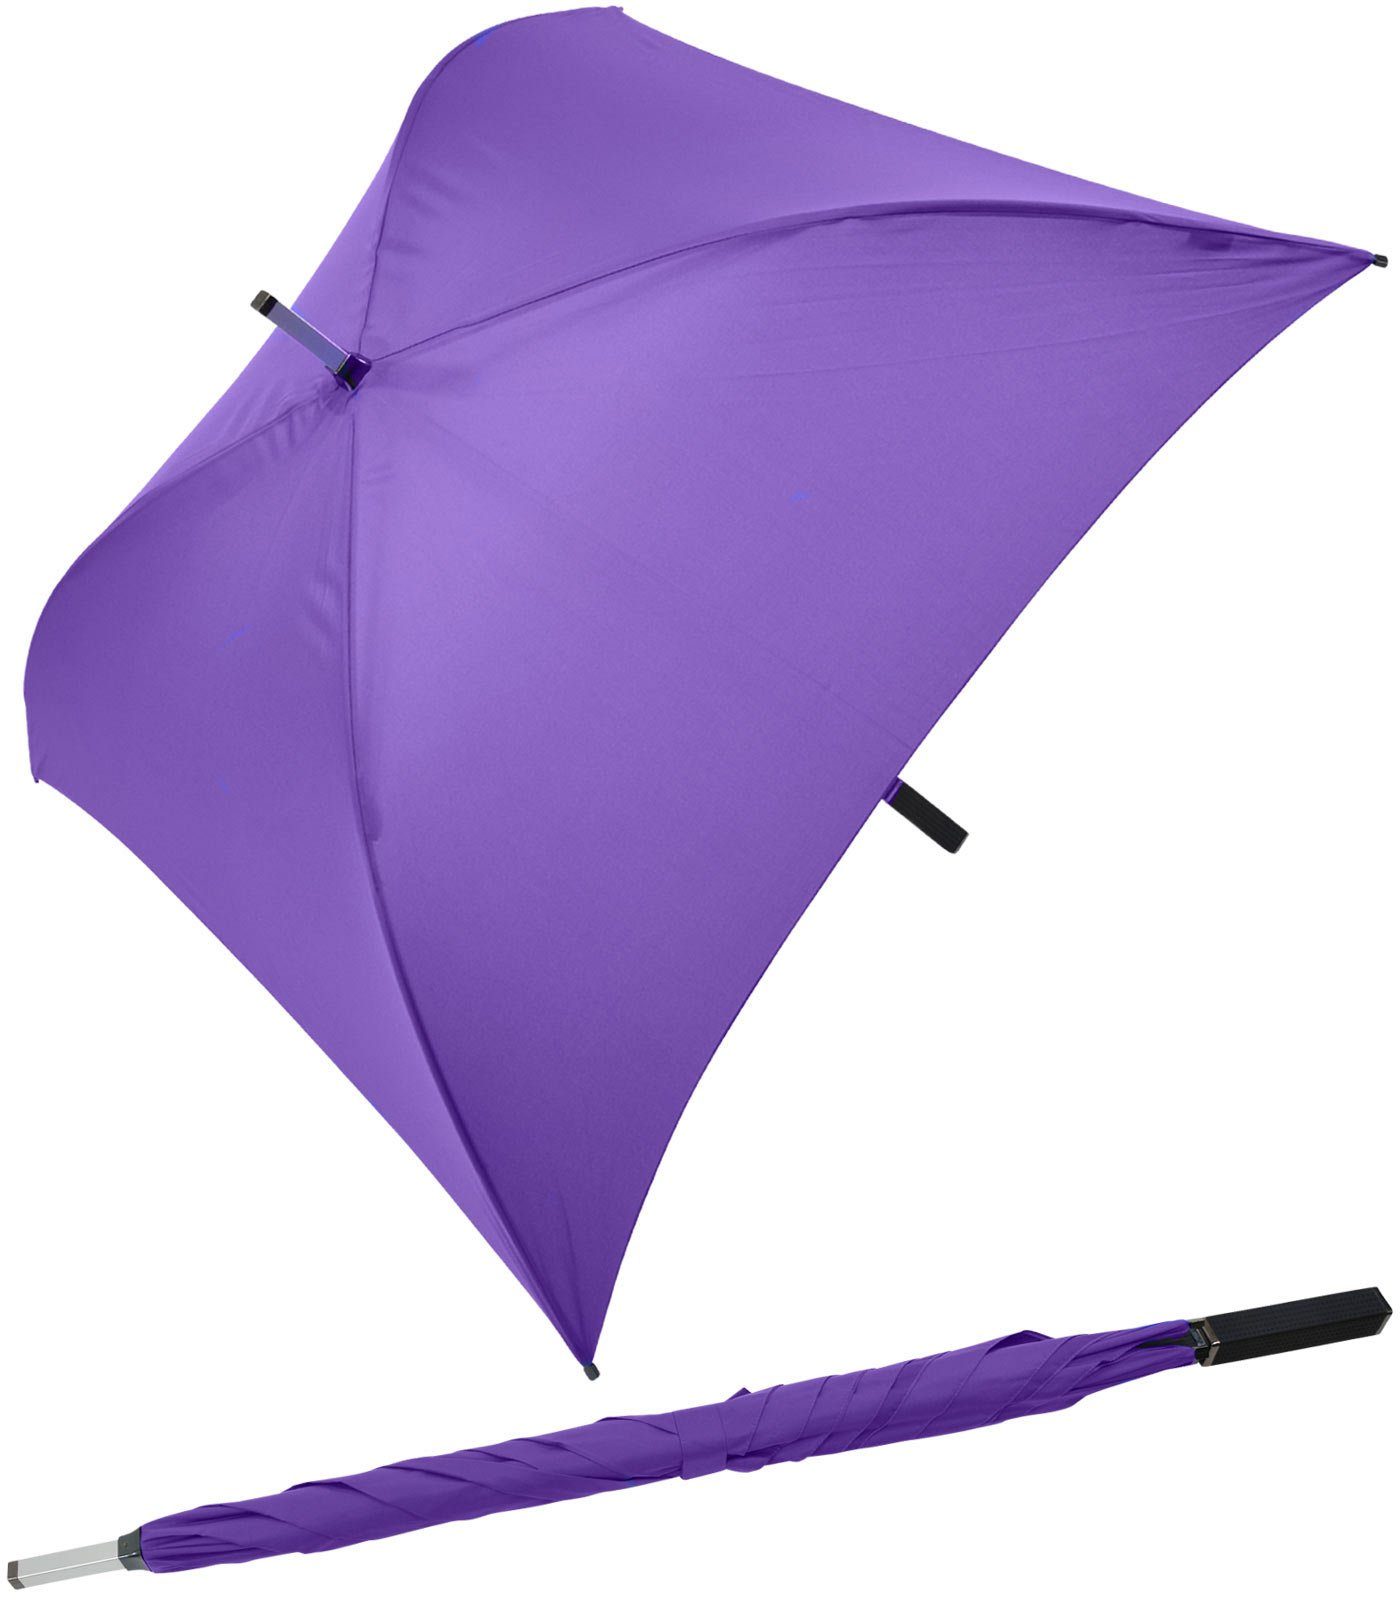 Impliva Langregenschirm All Square® voll quadratischer Regenschirm, der ganz besondere Regenschirm violett | Stockschirme